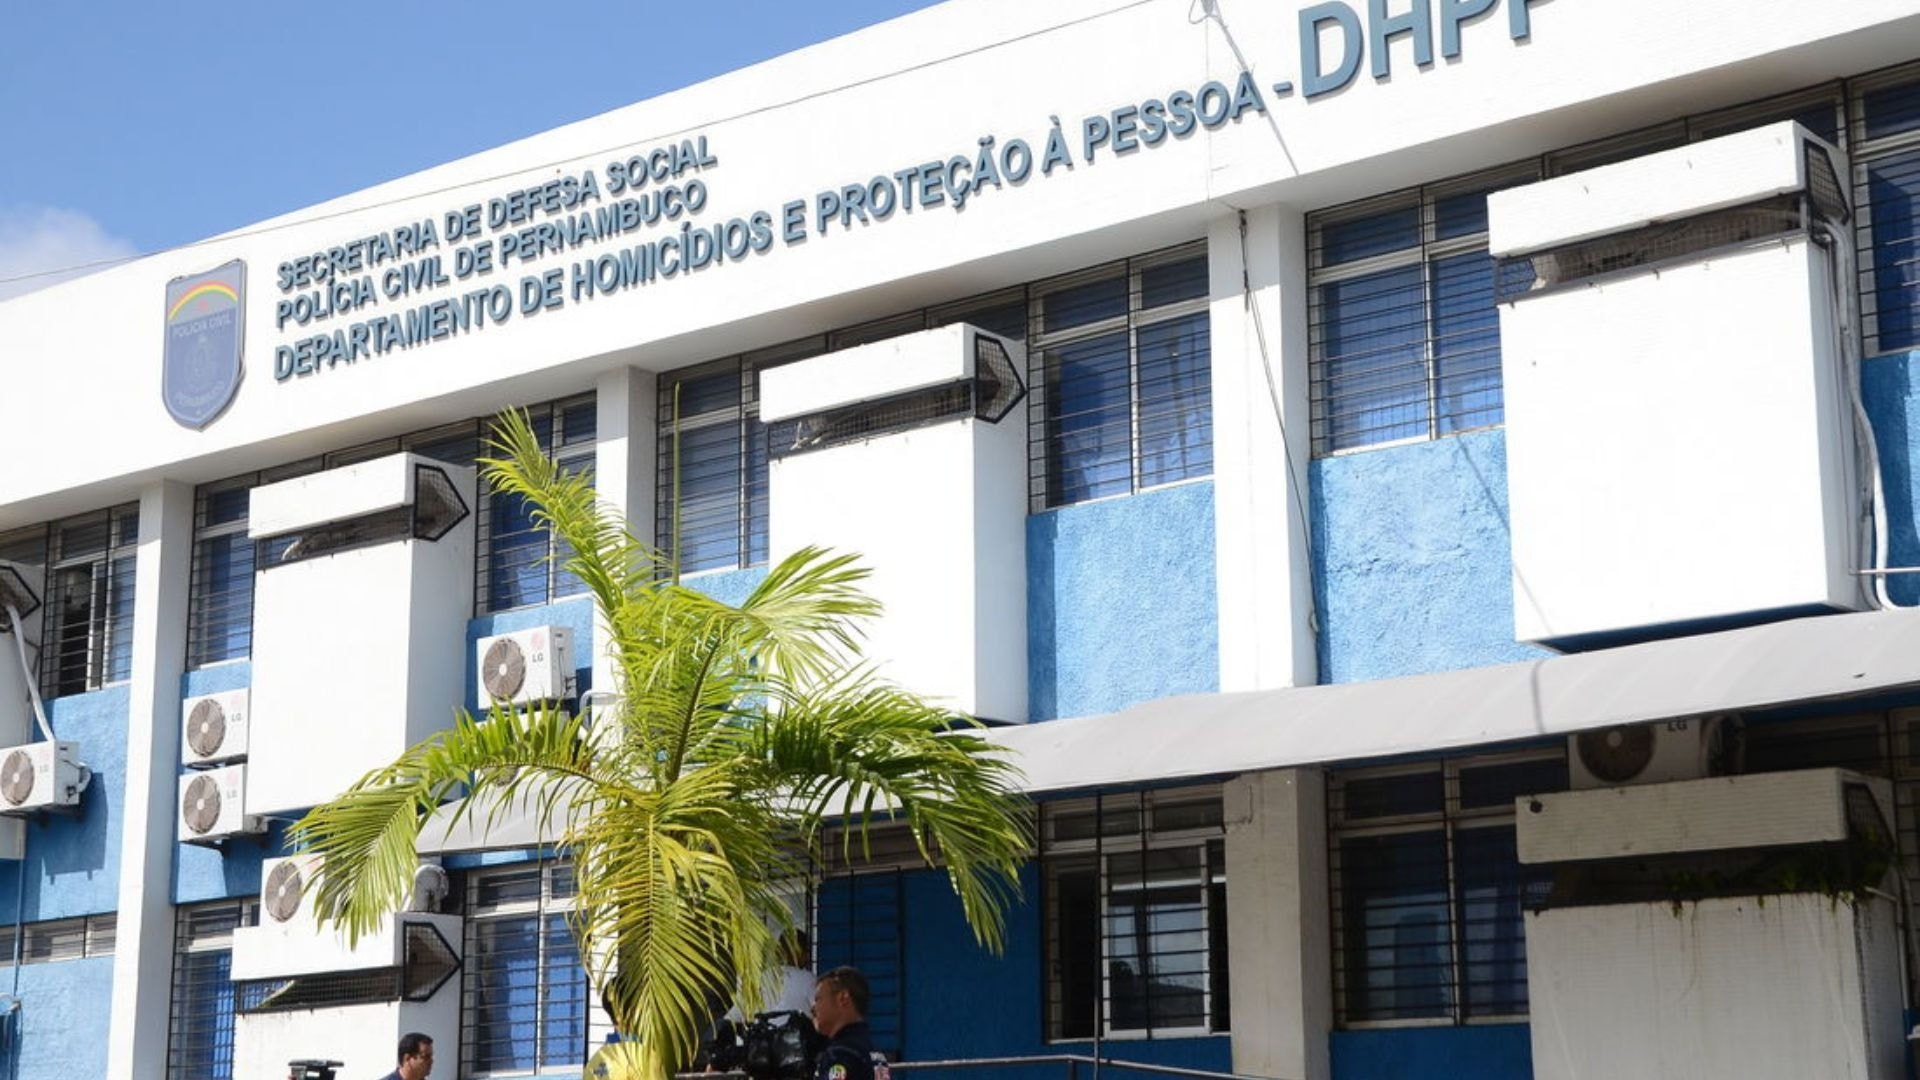 Homicídio foi registrado por meio do DHPP (Departamento de Homicídios e Proteção à Pessoa)